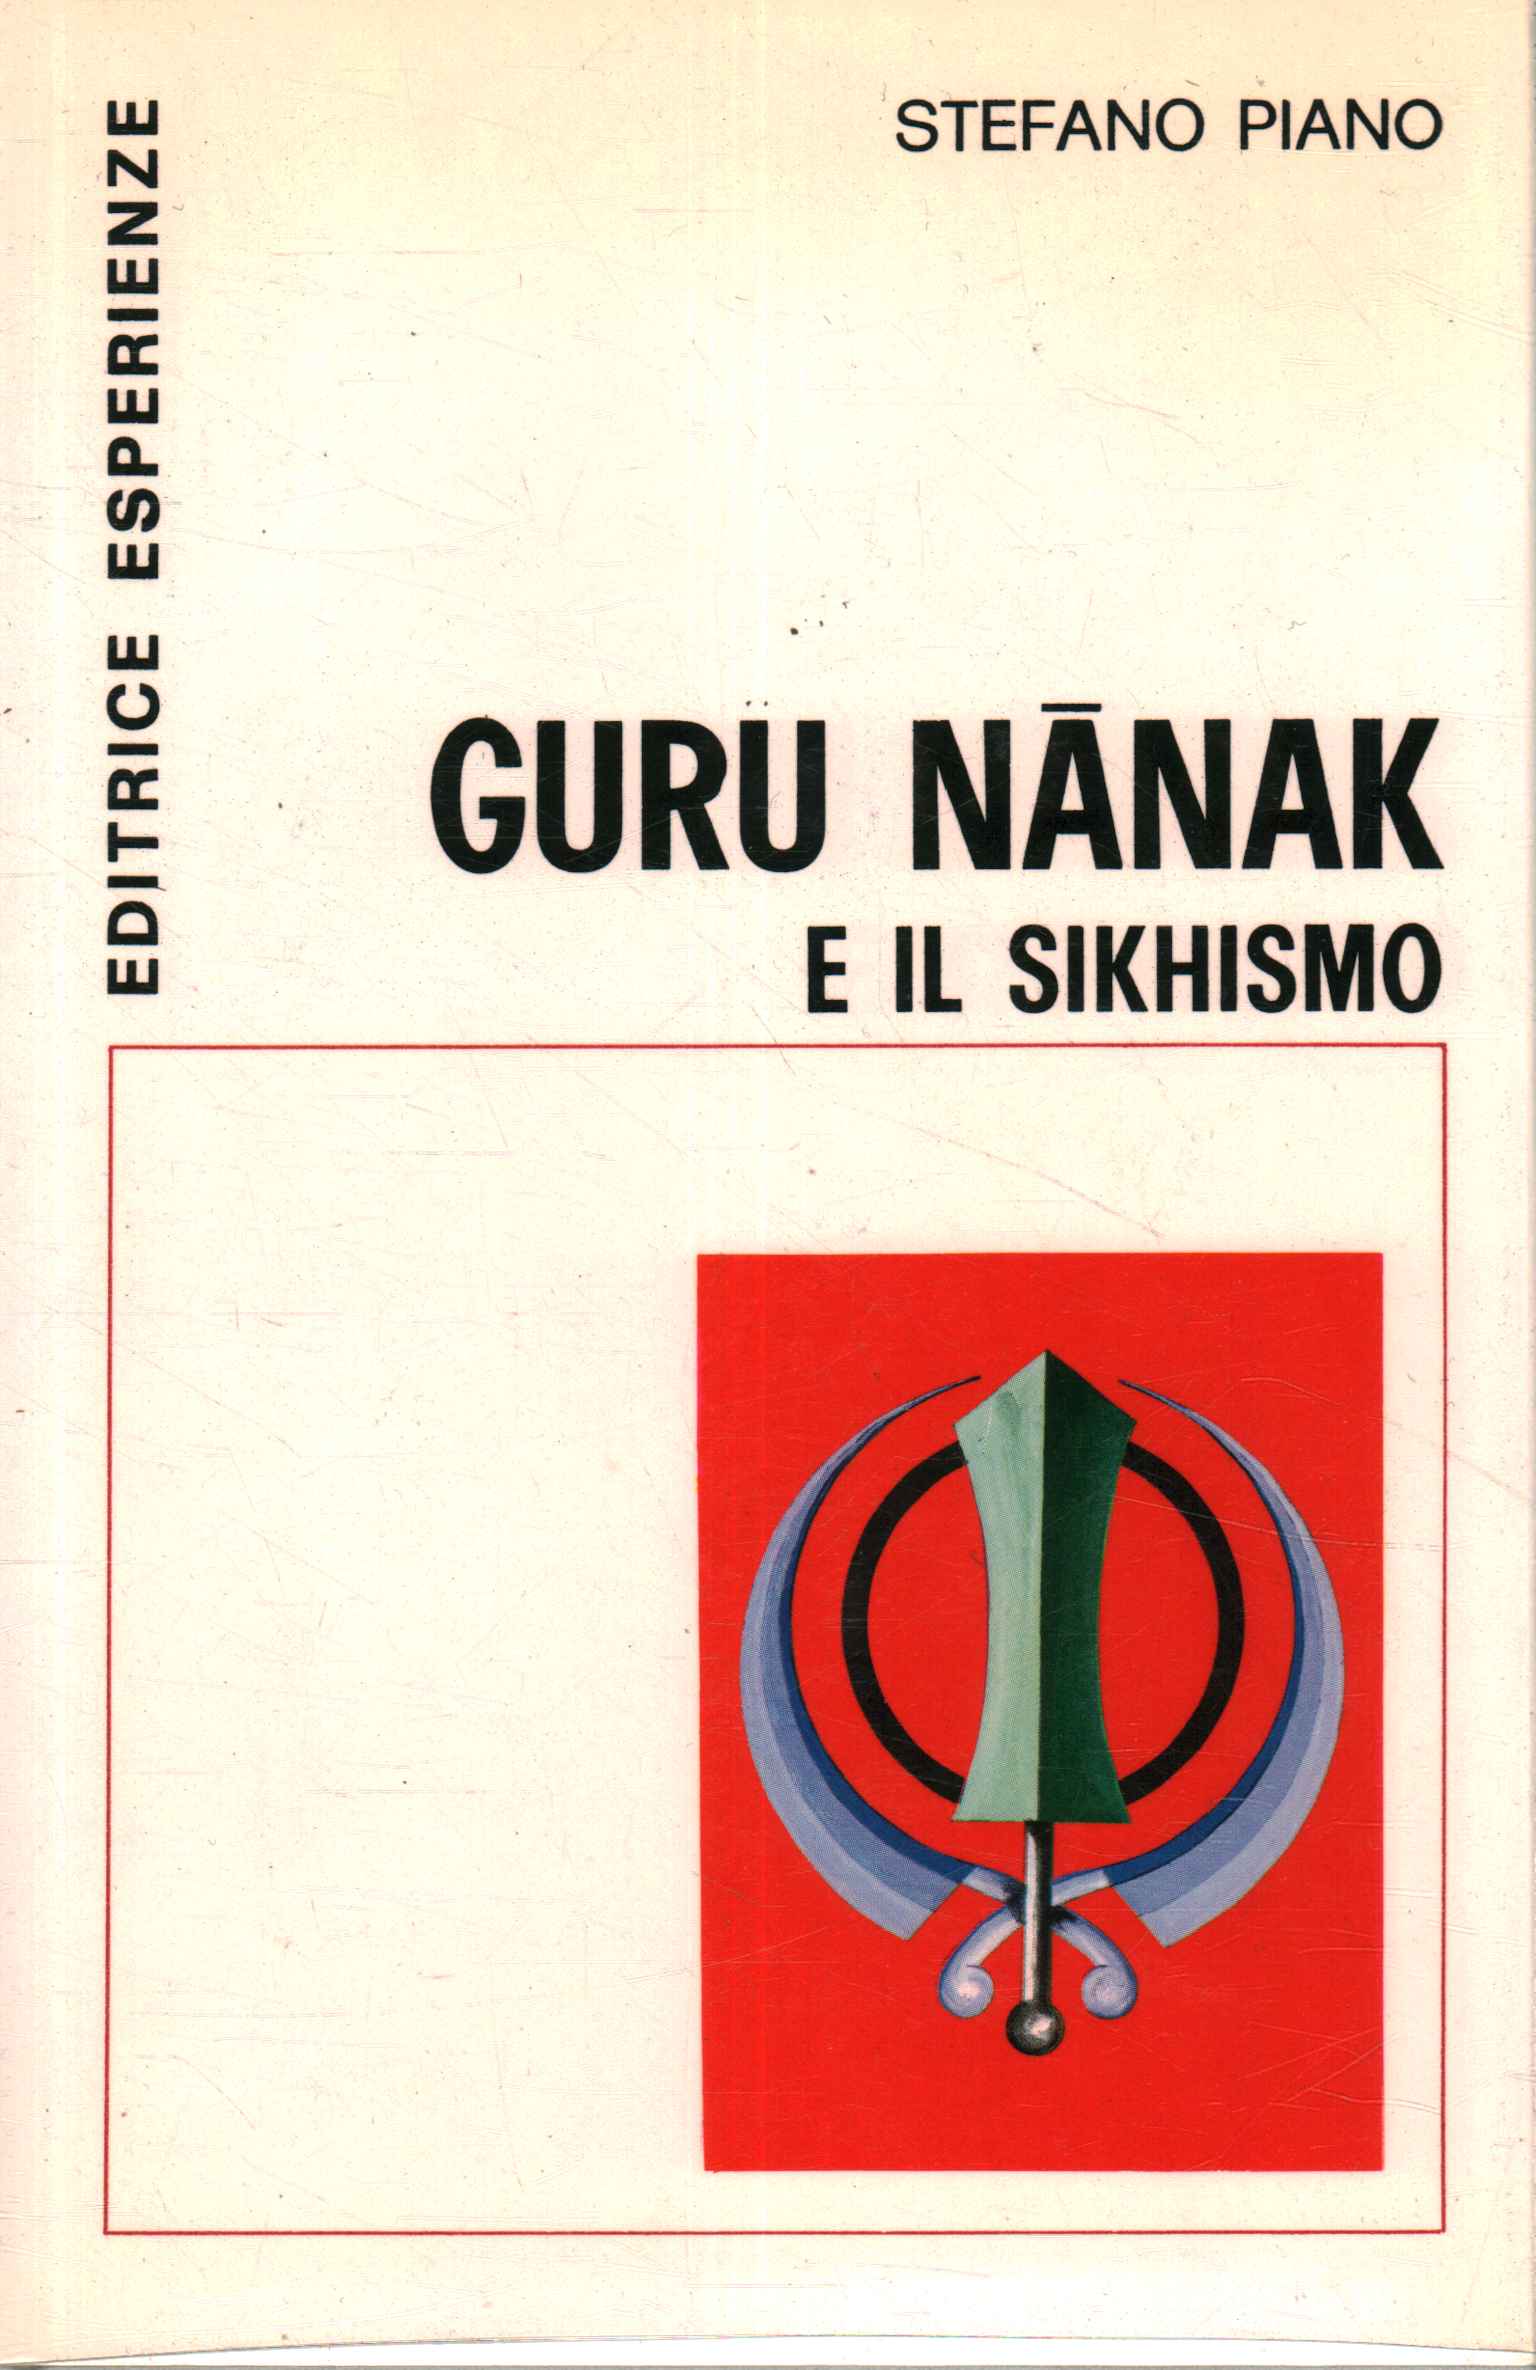 Guru Nanak und Sikhismus